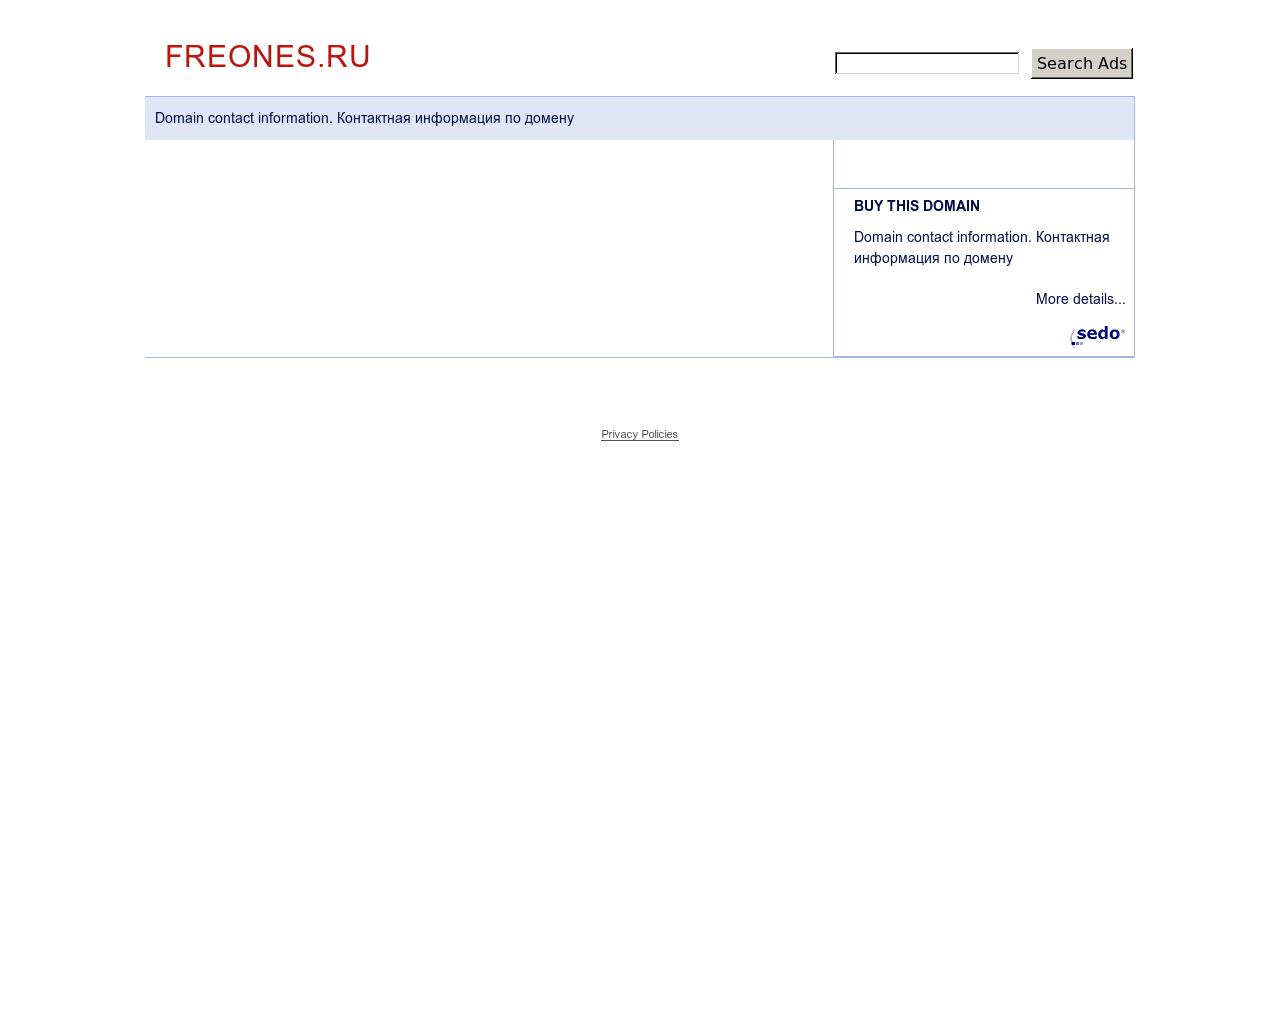 Изображение сайта freones.ru в разрешении 1280x1024